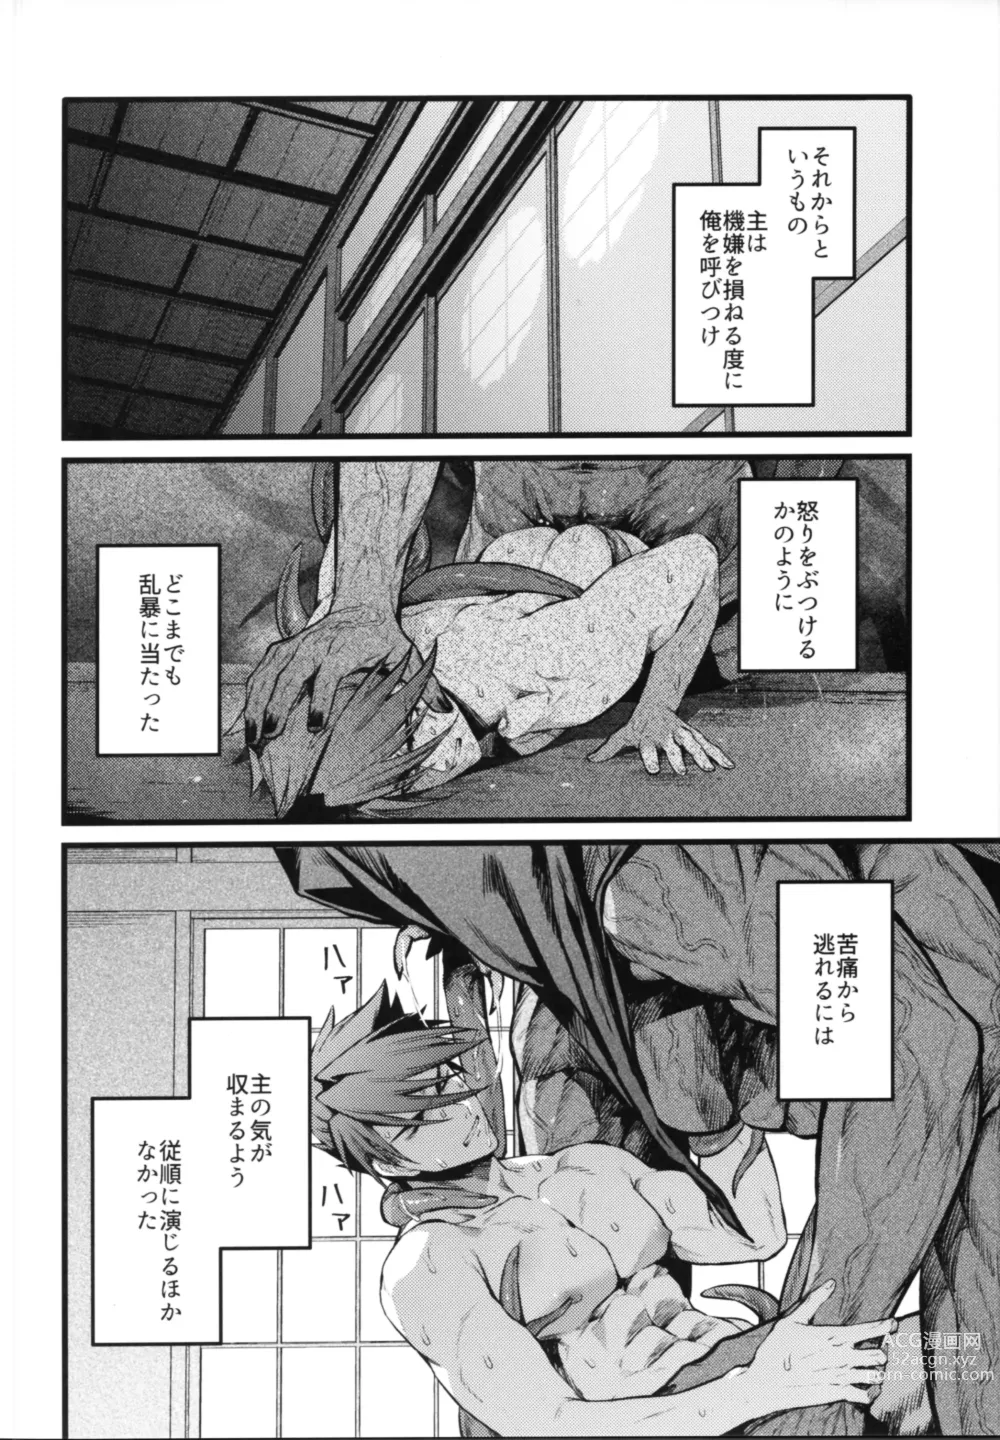 Page 7 of doujinshi Kamigakari no nagusami